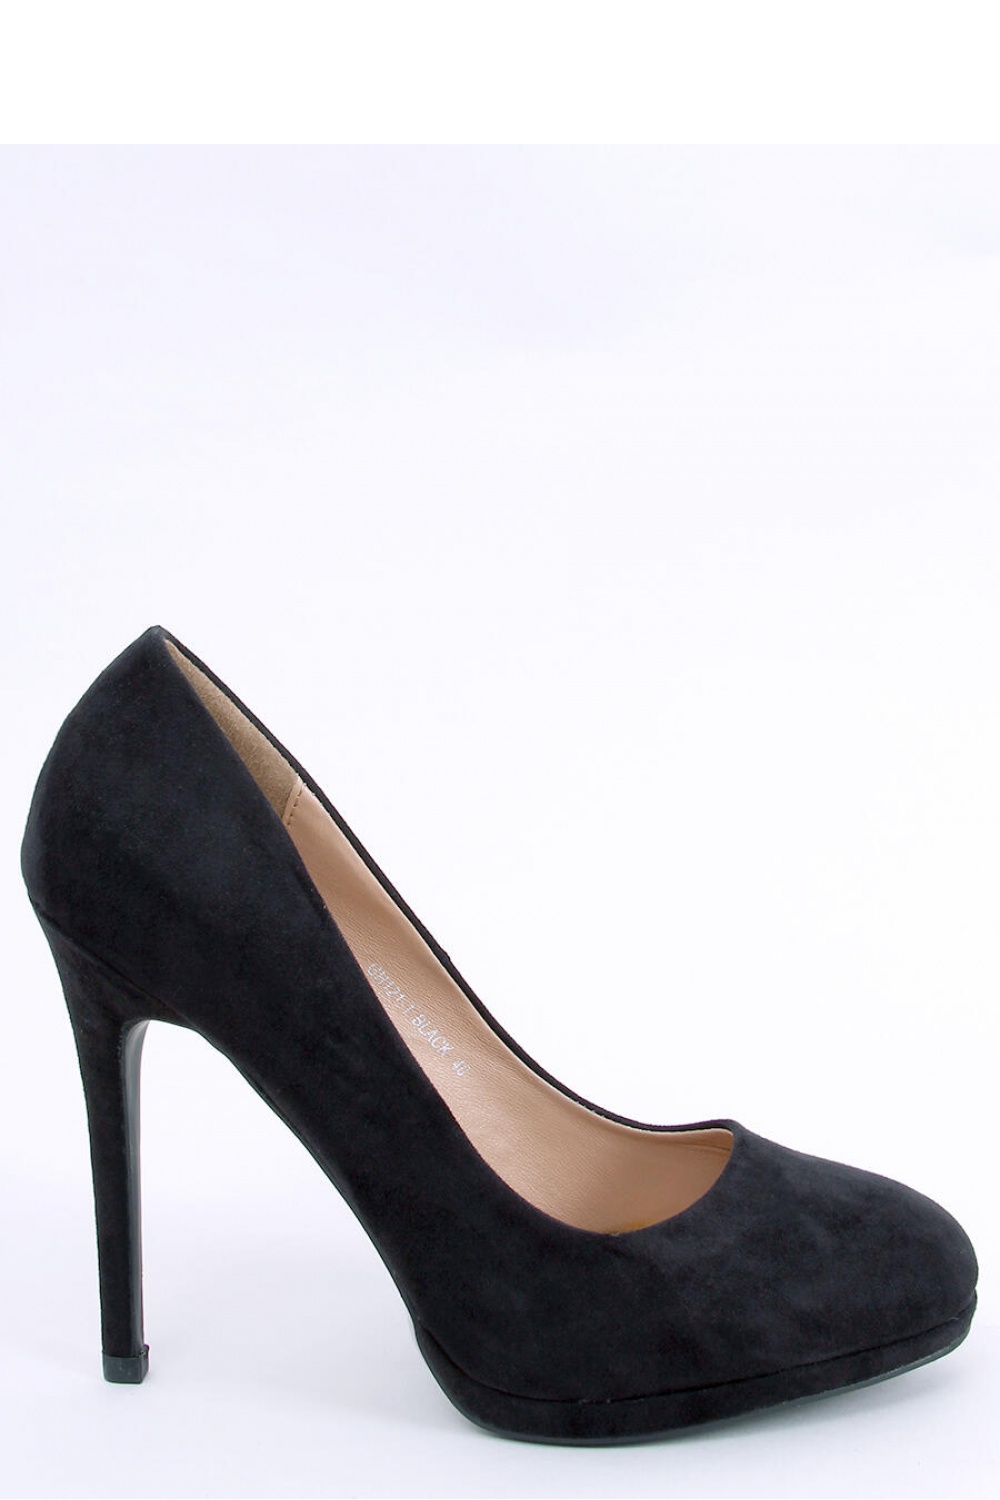 High heels model 174098 Inello